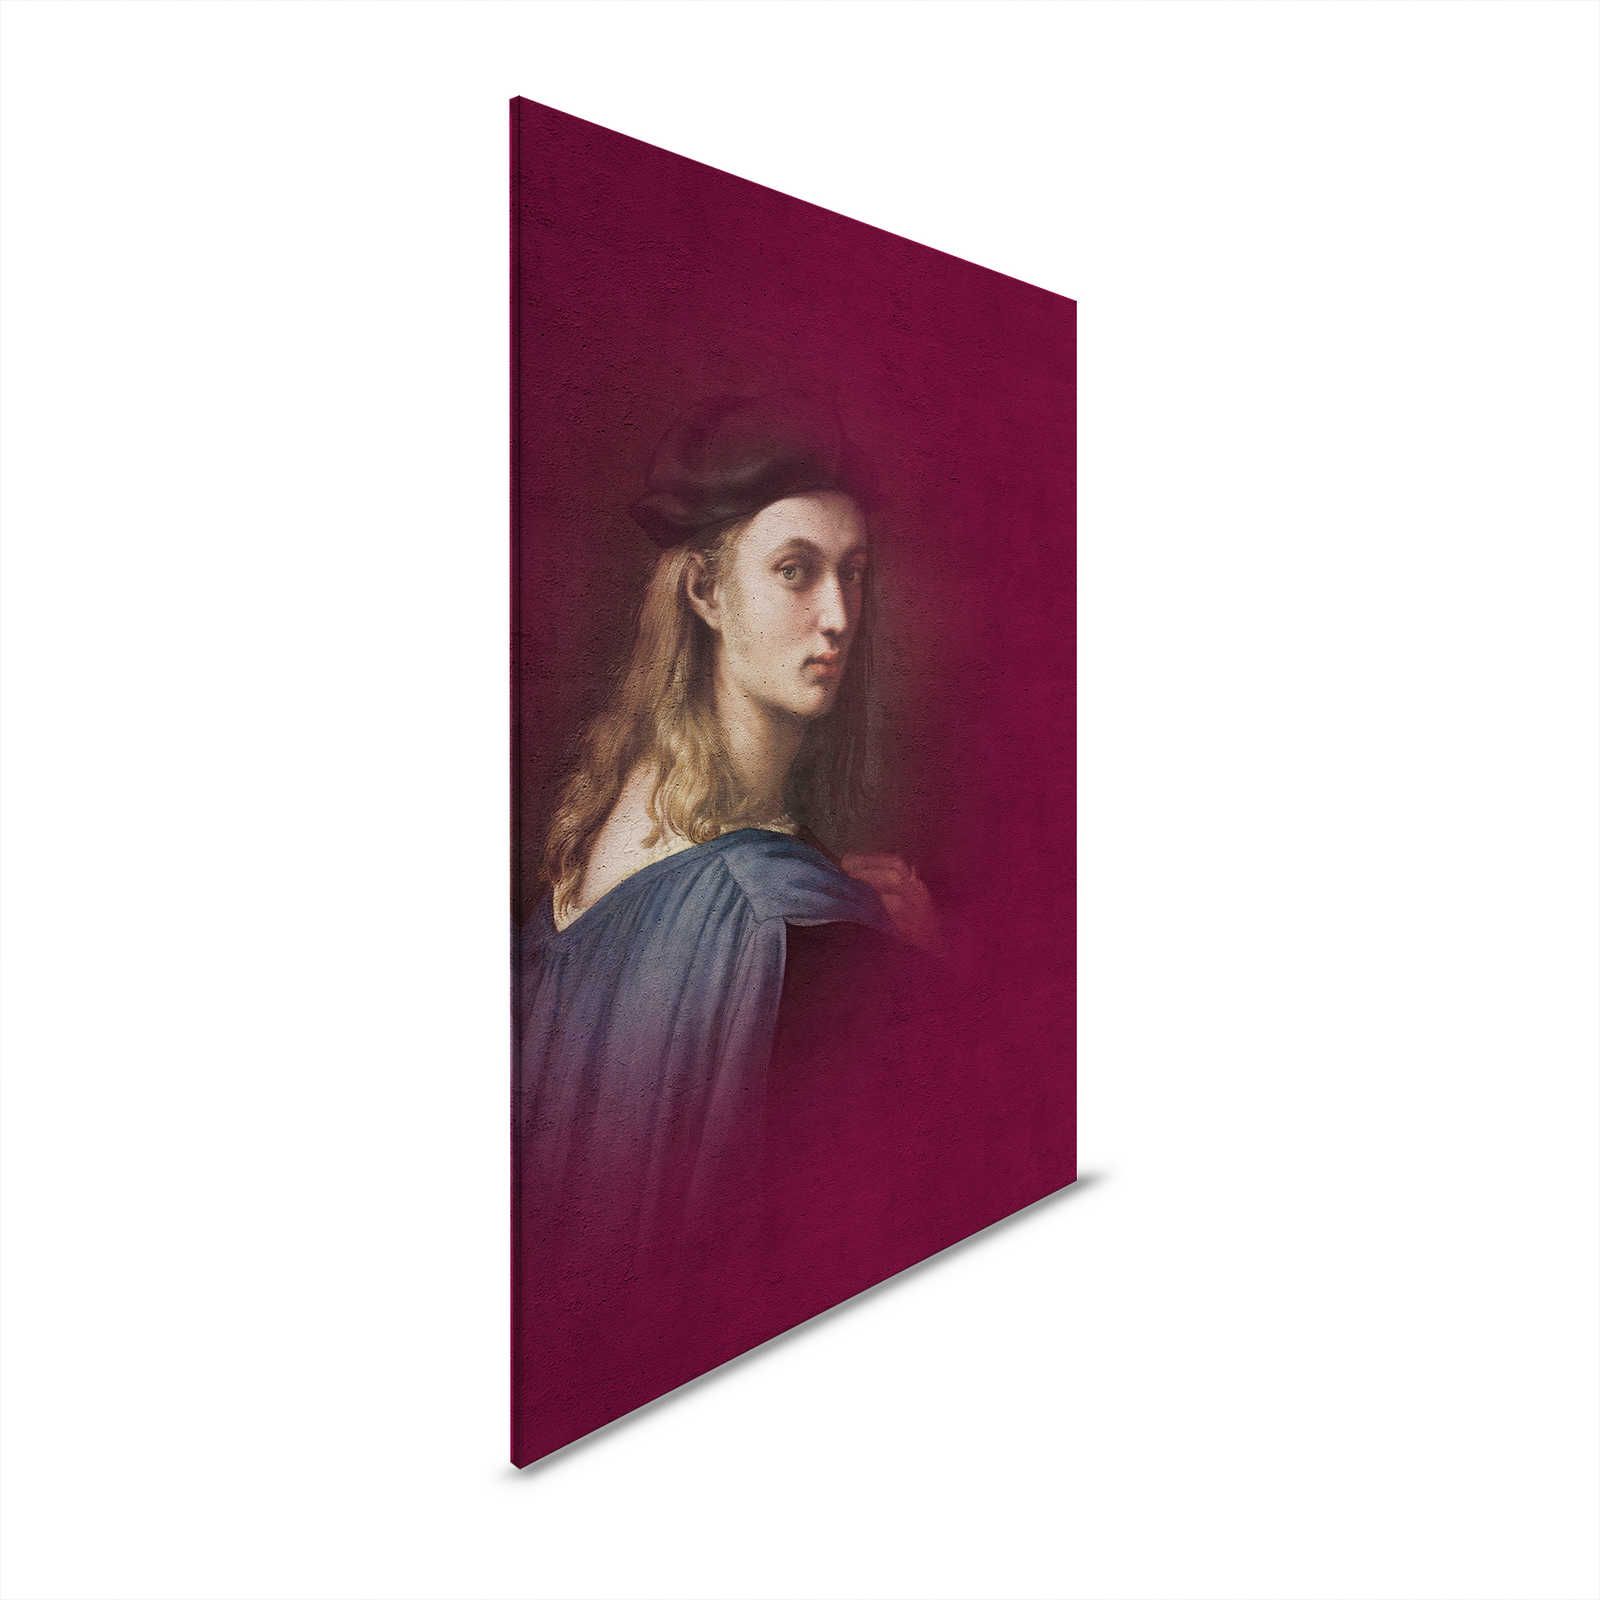 Canvas schilderij klassiek portret jongeman - 0,80 m x 1,20 m
